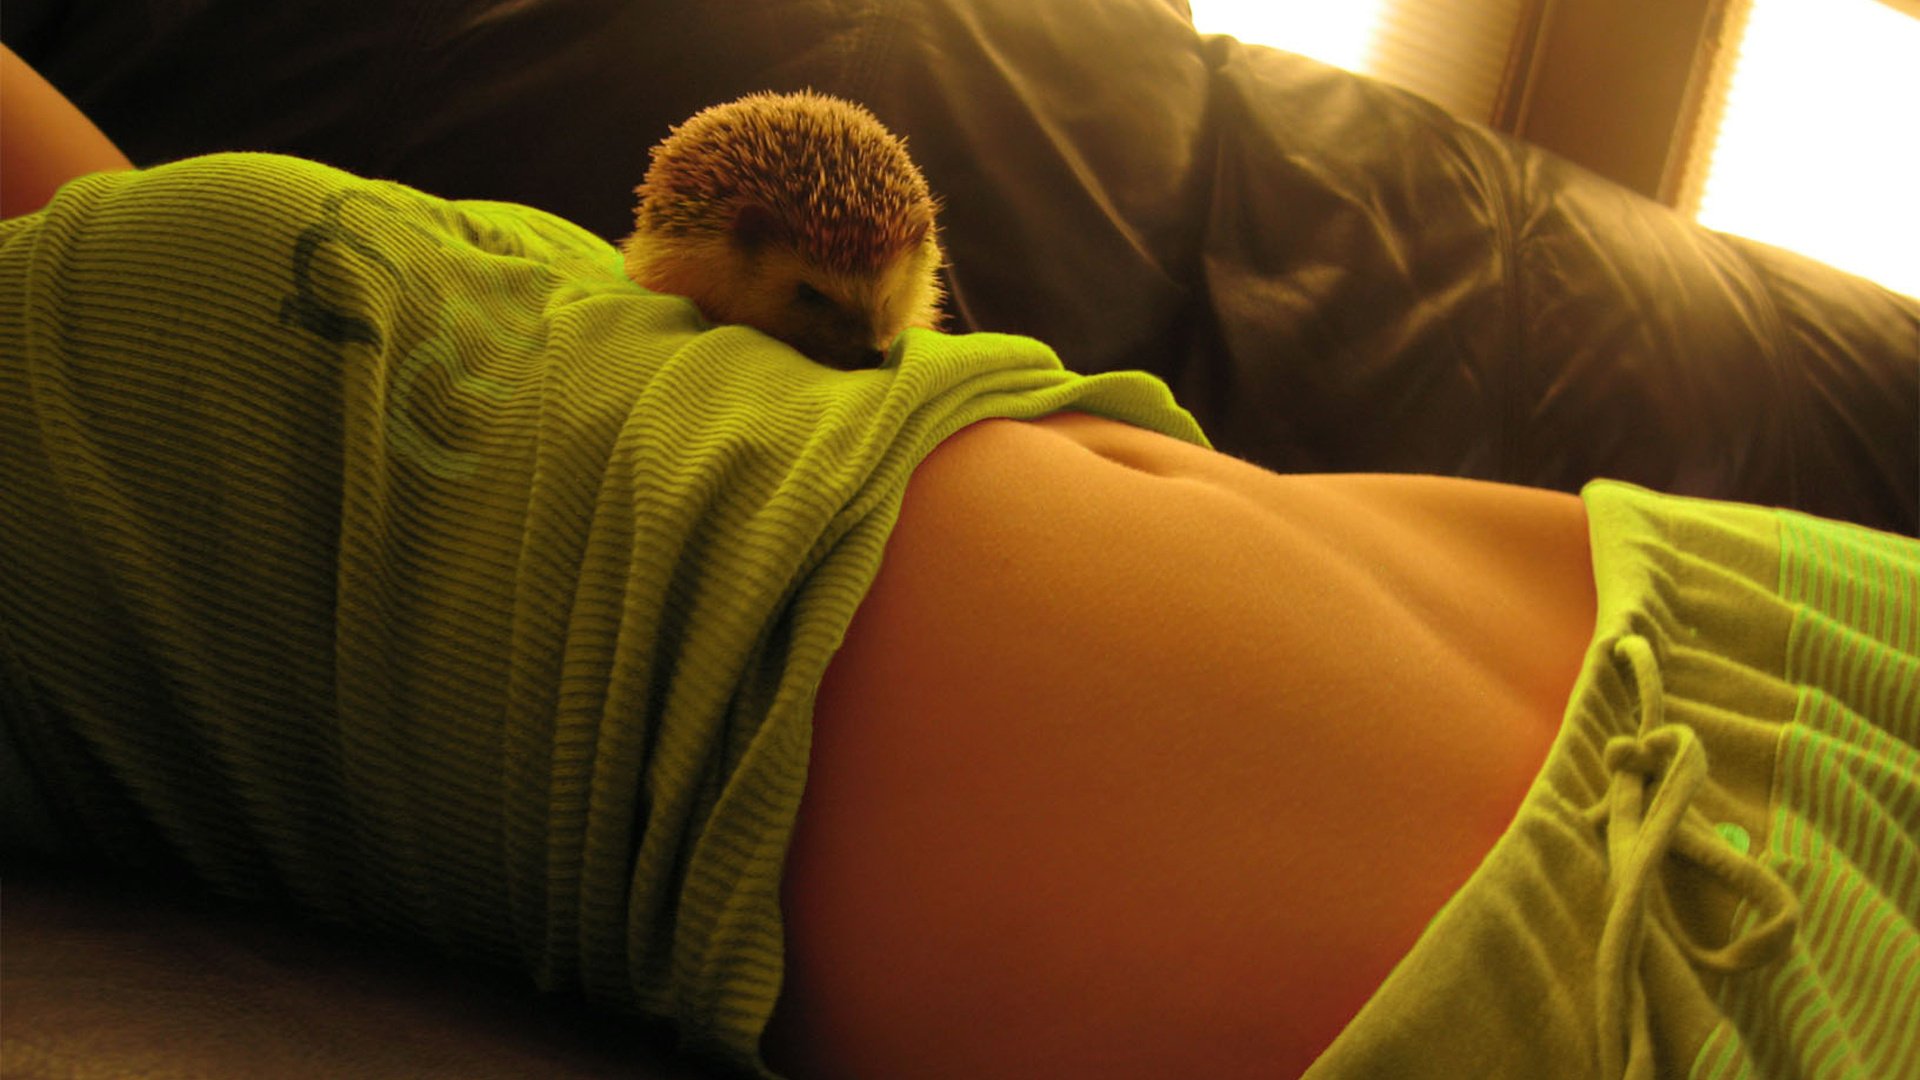 A girl with a hedgehog, a very cute photo of a hedgehog